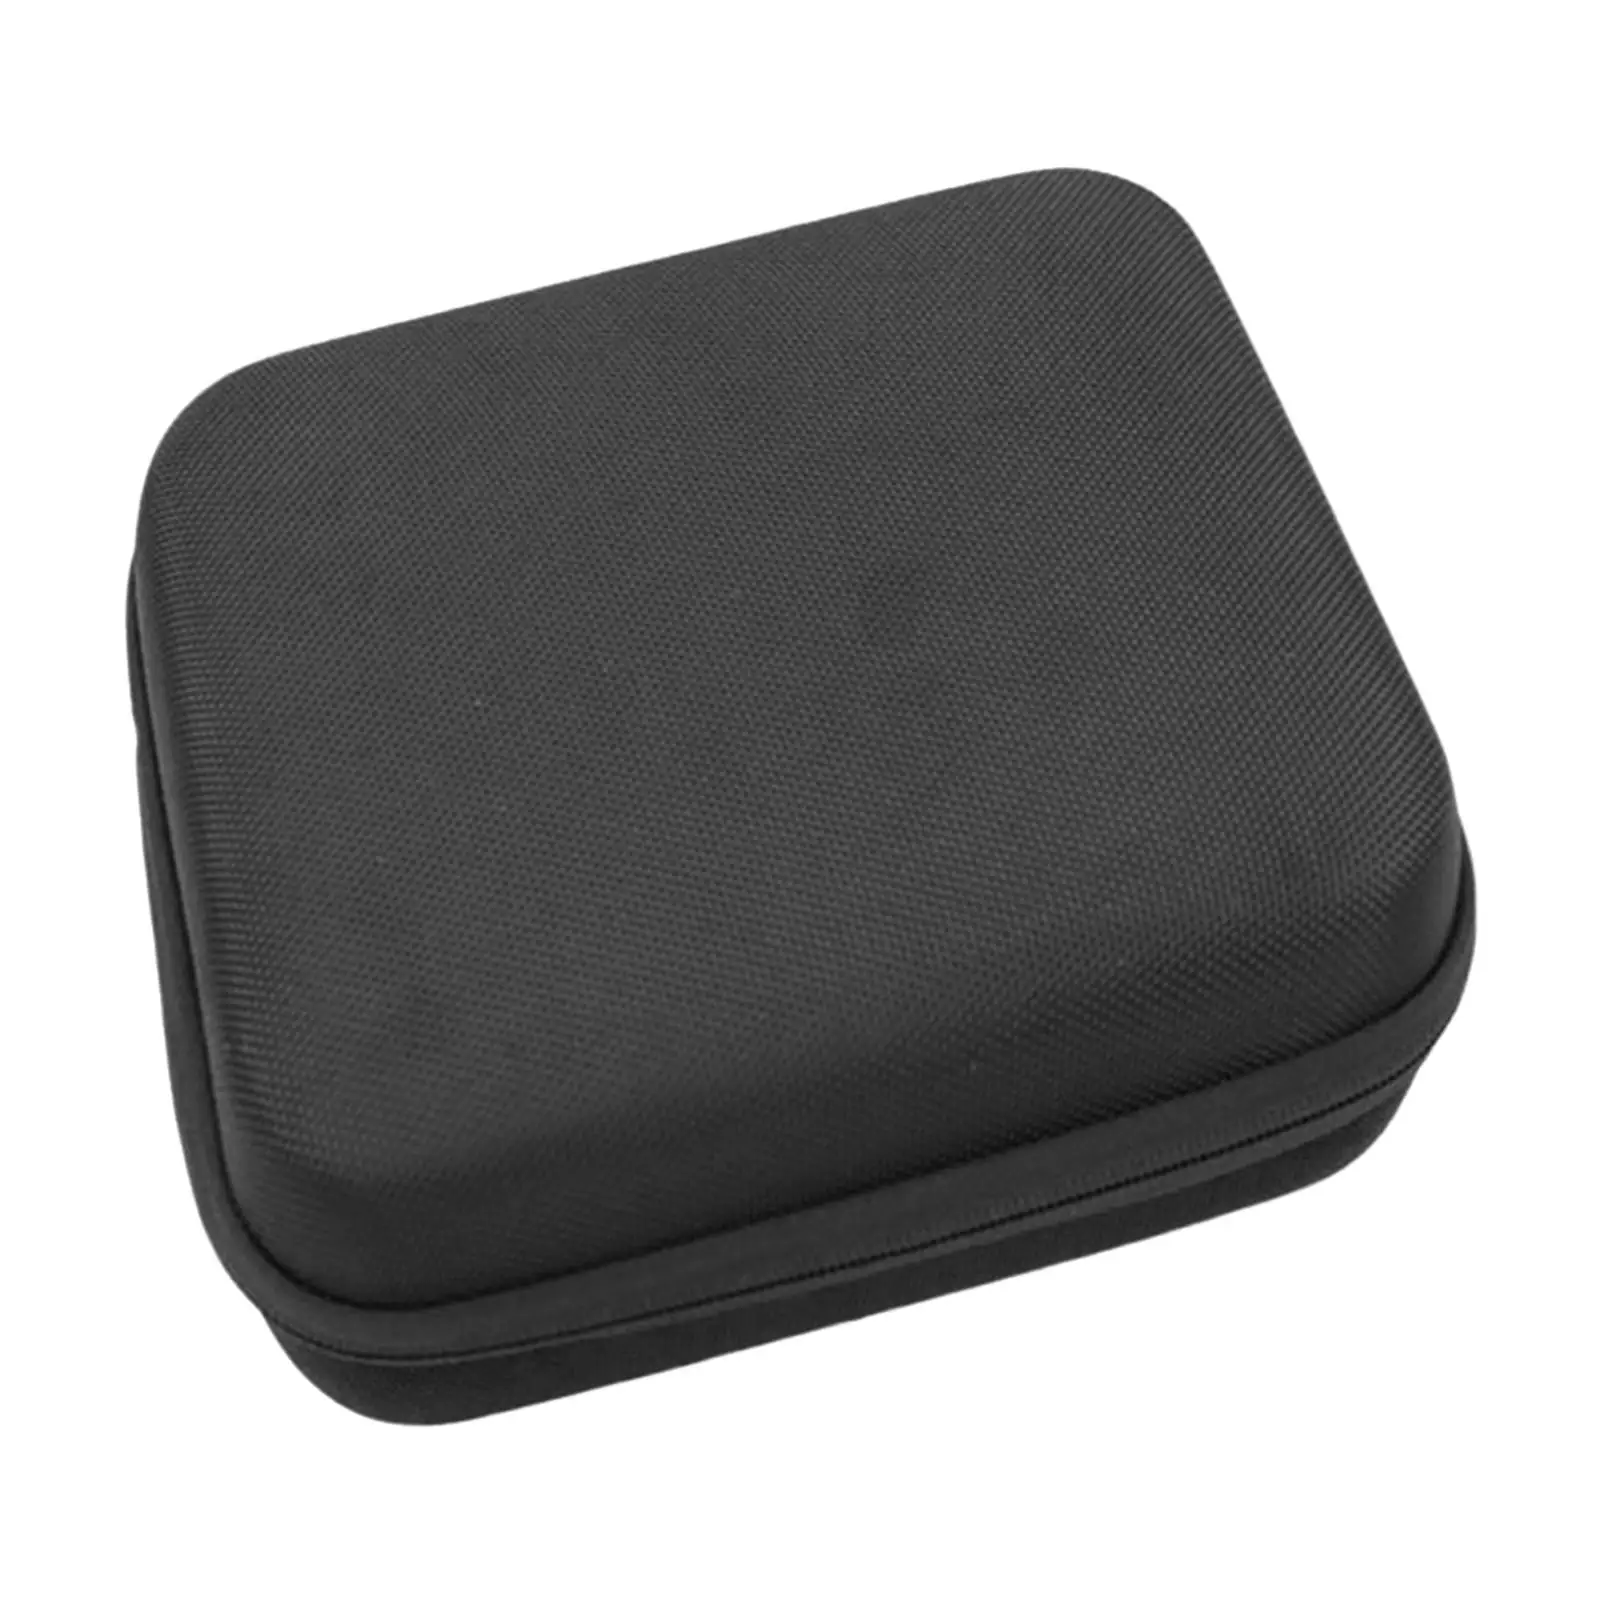  Oil Case EVA Portable Organizer Bag Impact Resistant Multipurpose Durable Dustproof Holder Box for Travel